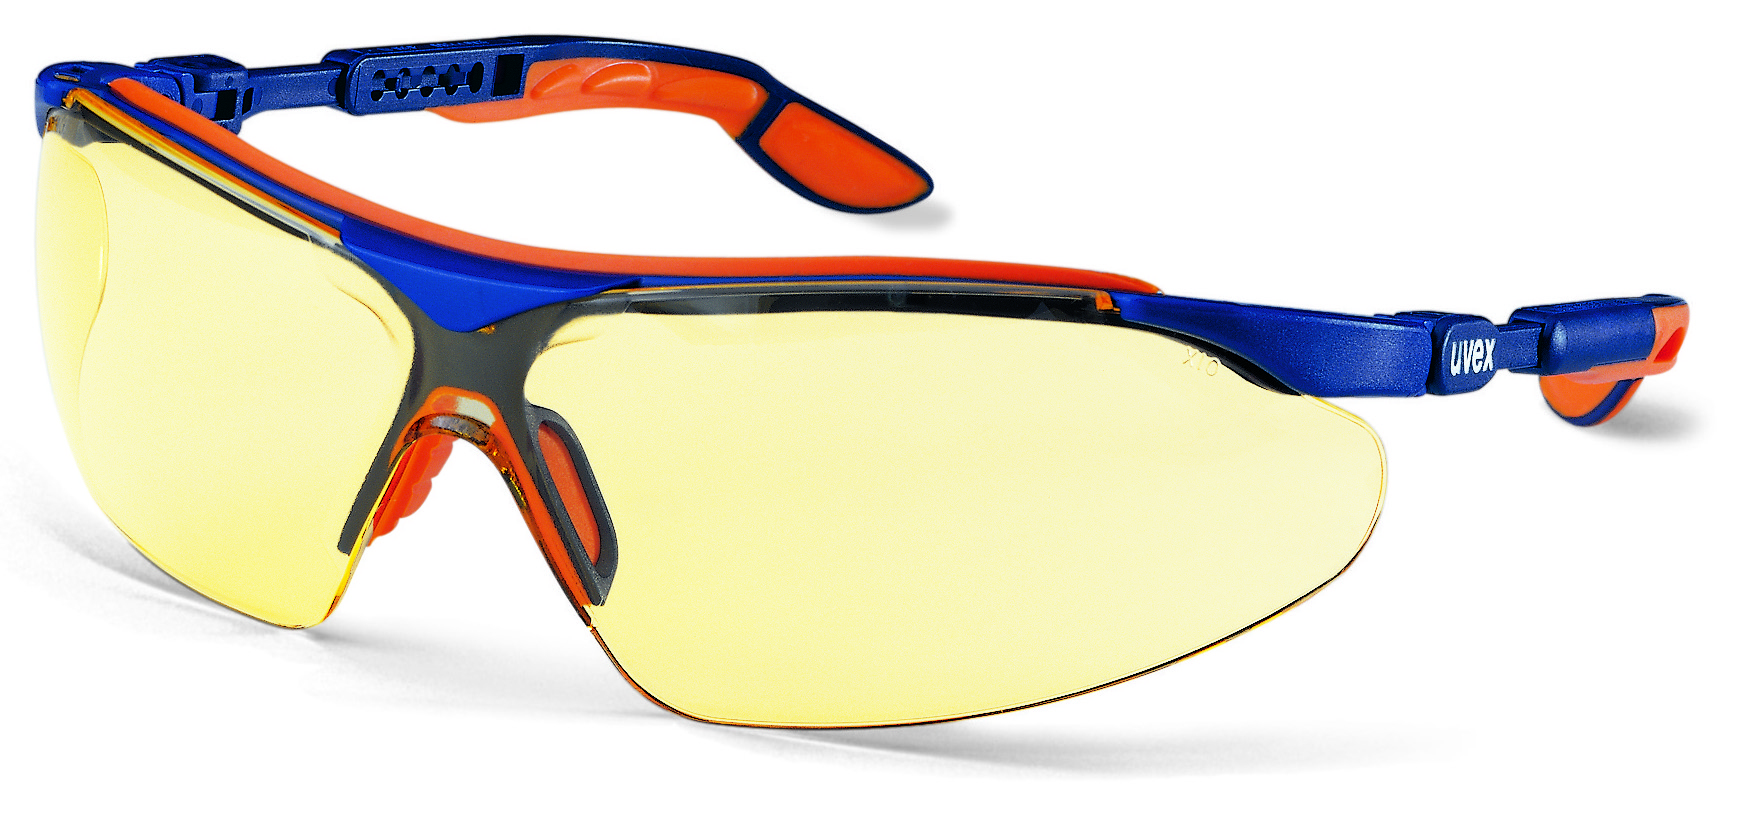 Brýle uvex i-vo Kód produktu: 9160520, Provedení zorníku: PC amber/UV 2-1,2; SV sapphire, rám. modrý/oranžový